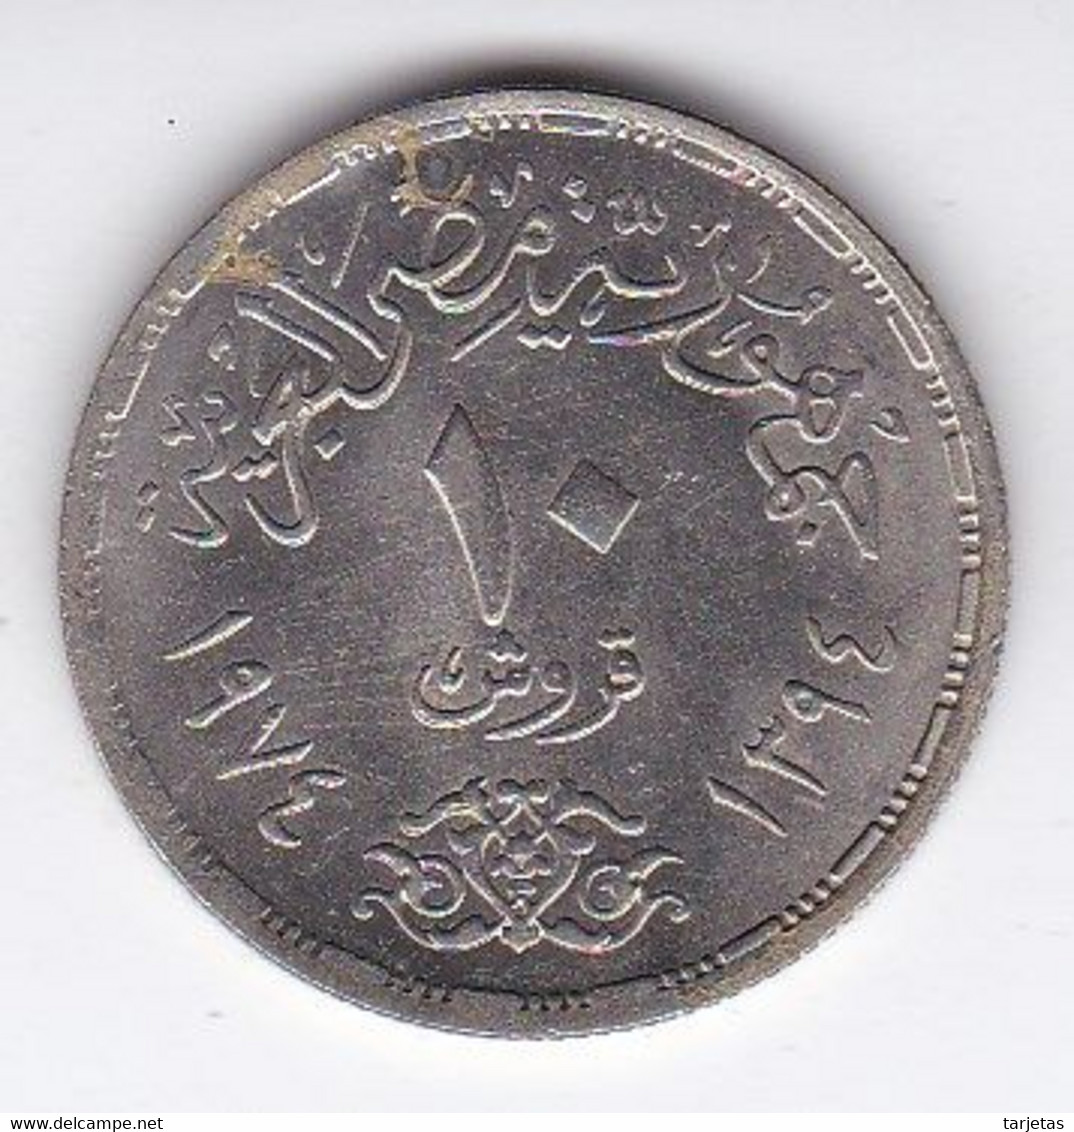 MONEDA DE EGIPTO DE 10 PIASTRES DEL AÑO 1974 (COIN) - Egypt